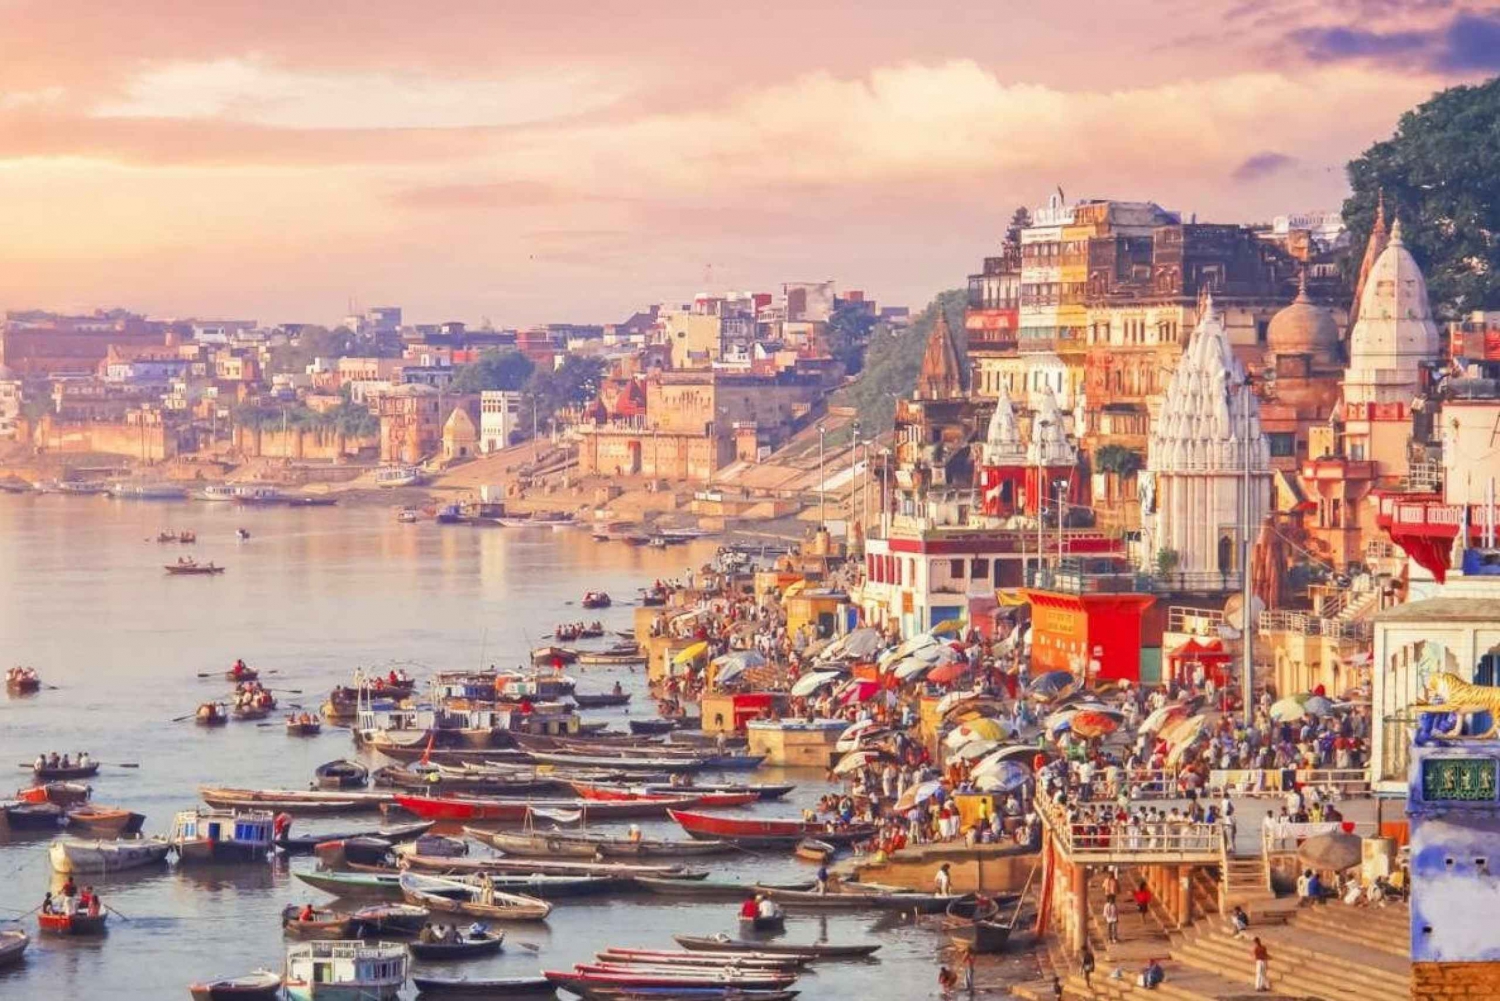 6 dages tur i Den Gyldne Trekant med spirituelt besøg i Varanasi